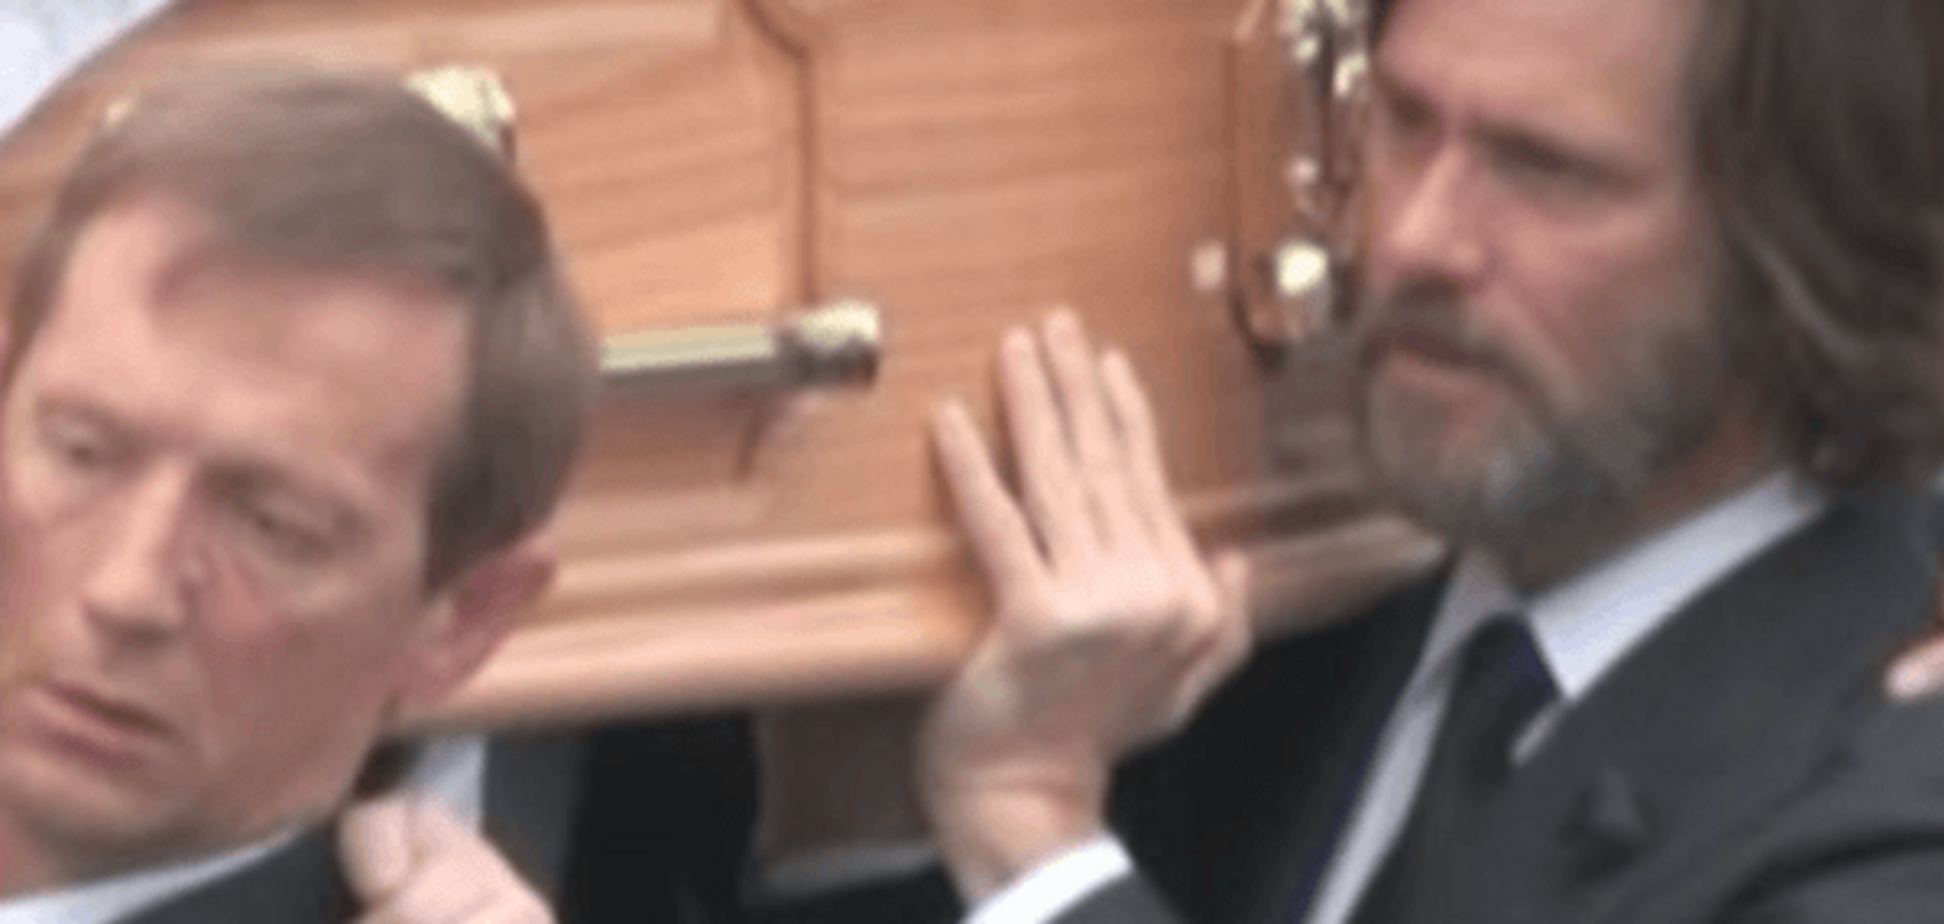 Трагедия Джима Керри: актер на похоронах нес гроб с бывшей возлюбленной. Видеофакт